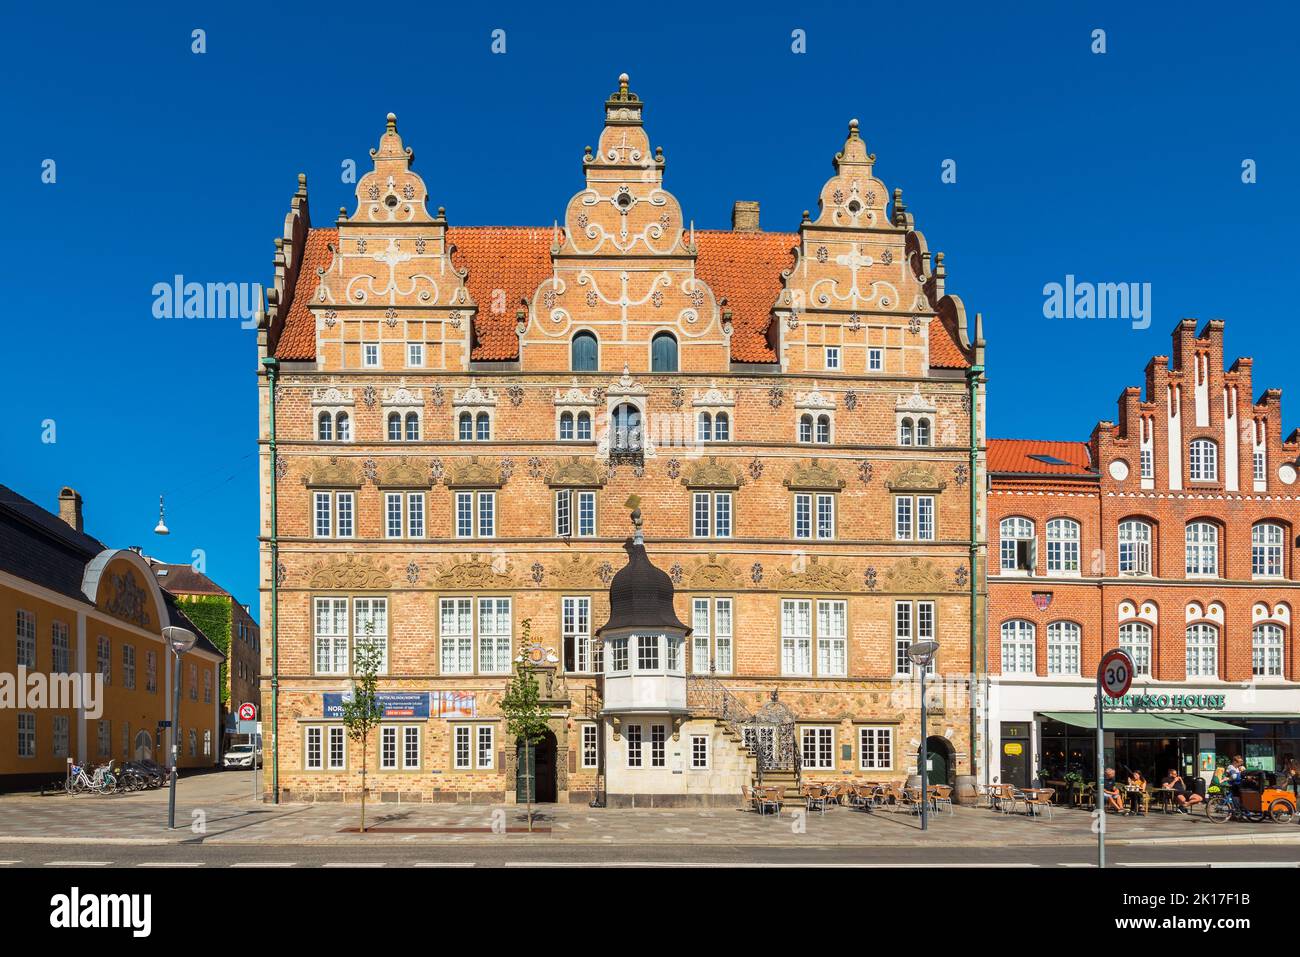 Jens Bang's House es una casa de referencia en Aalborg, Dinamarca. Fue construido en 1624 por Jens Bang en estilo renacentista holandés. Foto de stock